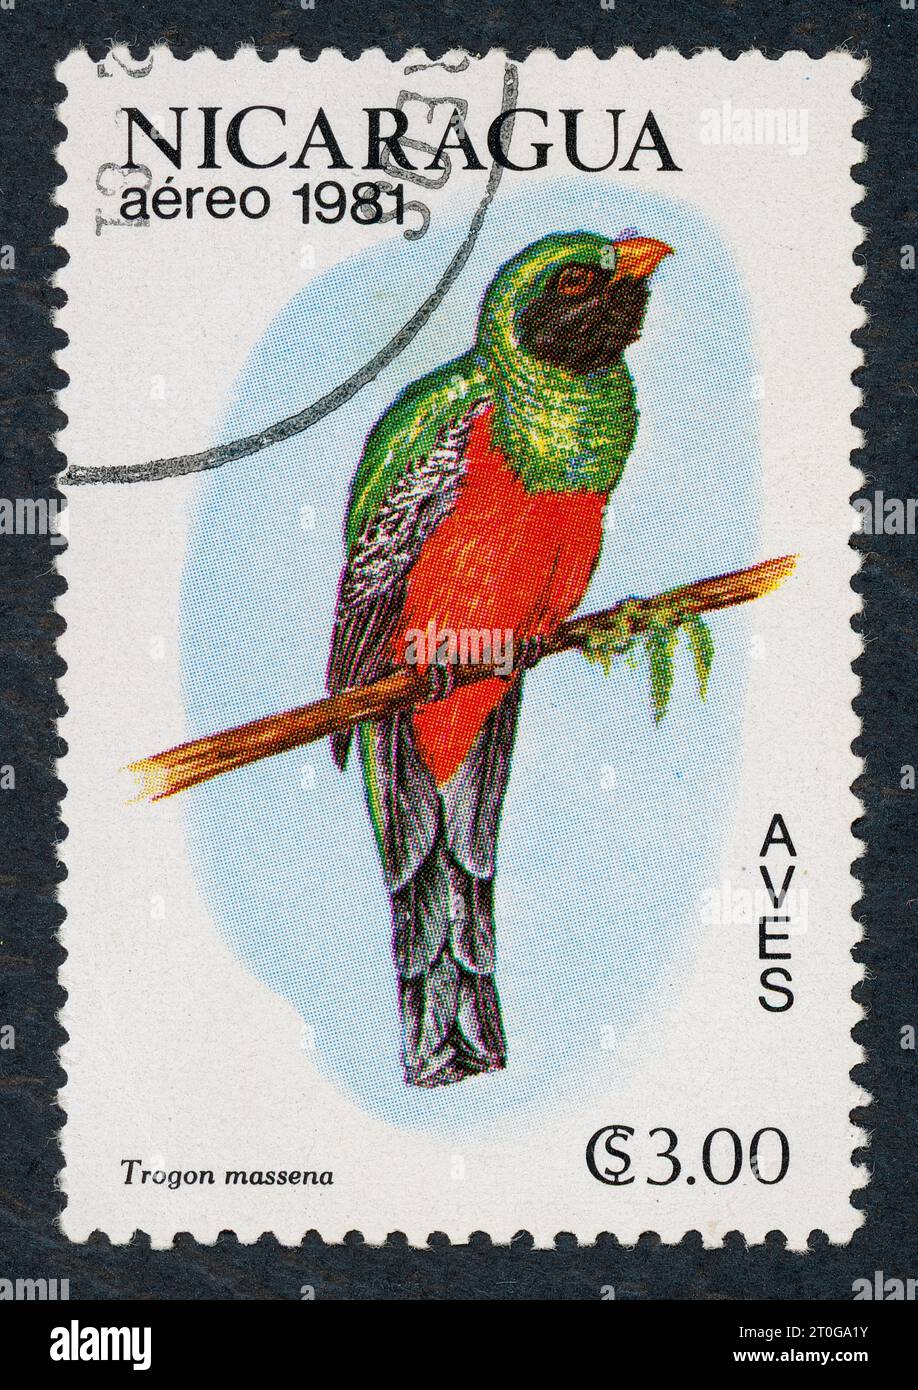 Le trogon à queue ardoise (Trogon massena). Série oiseaux. Timbre-poste émis au Nicaragua en 1981. Banque D'Images